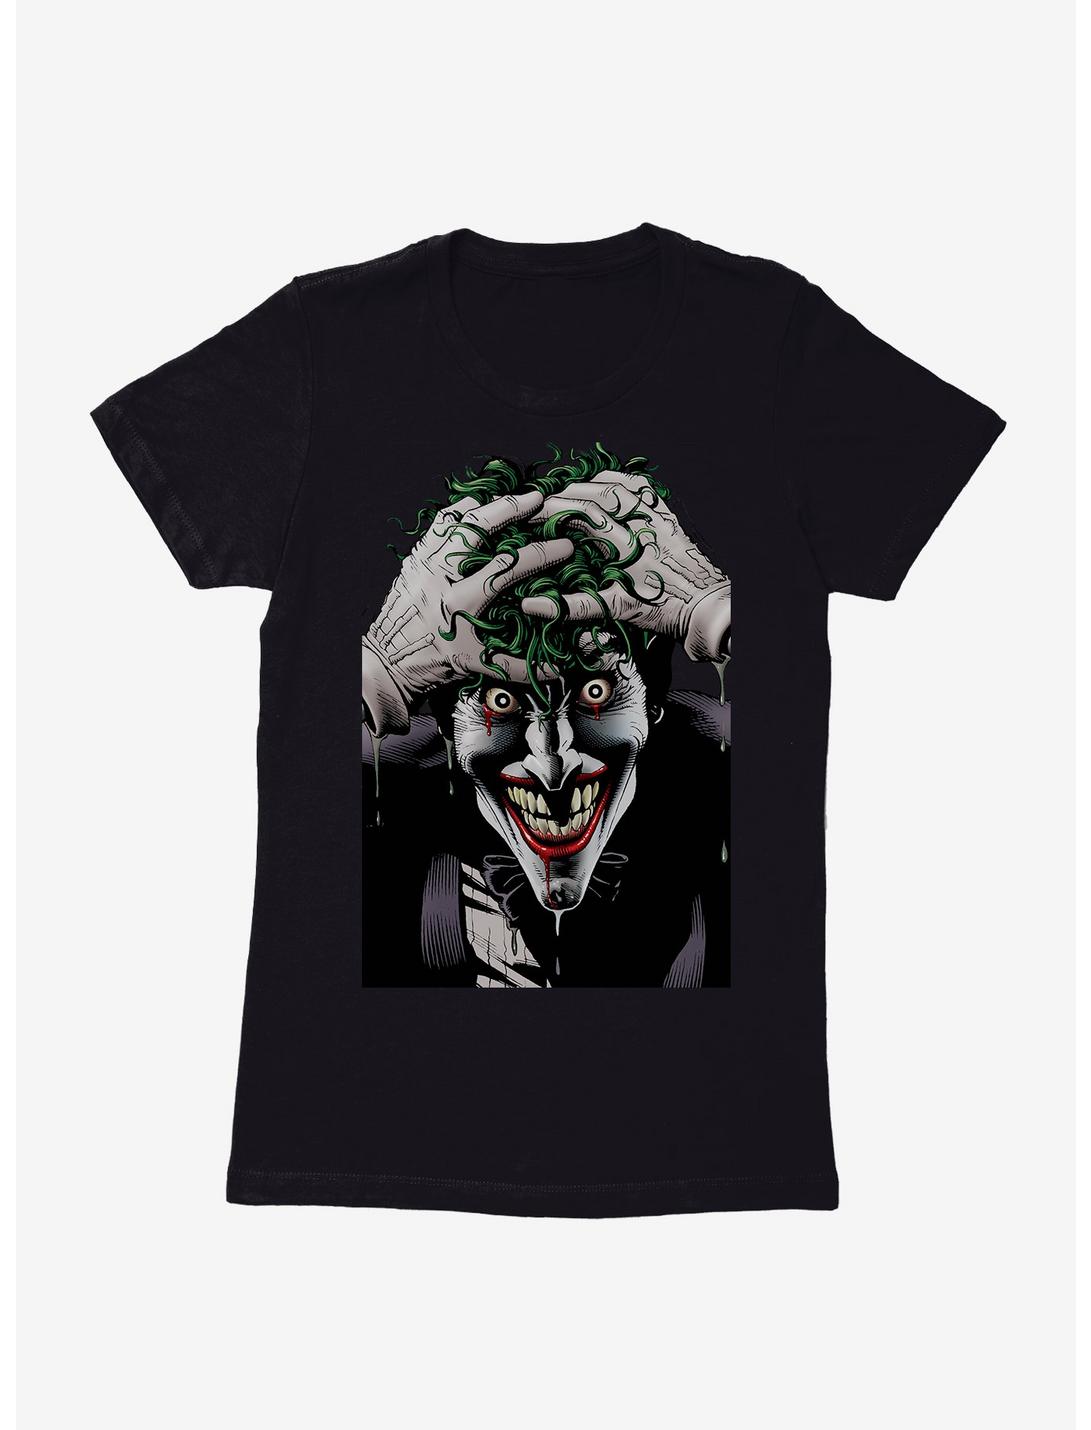 DC Comics Batman The Joker The Killing Joke Womens Black T-Shirt, BLACK, hi-res